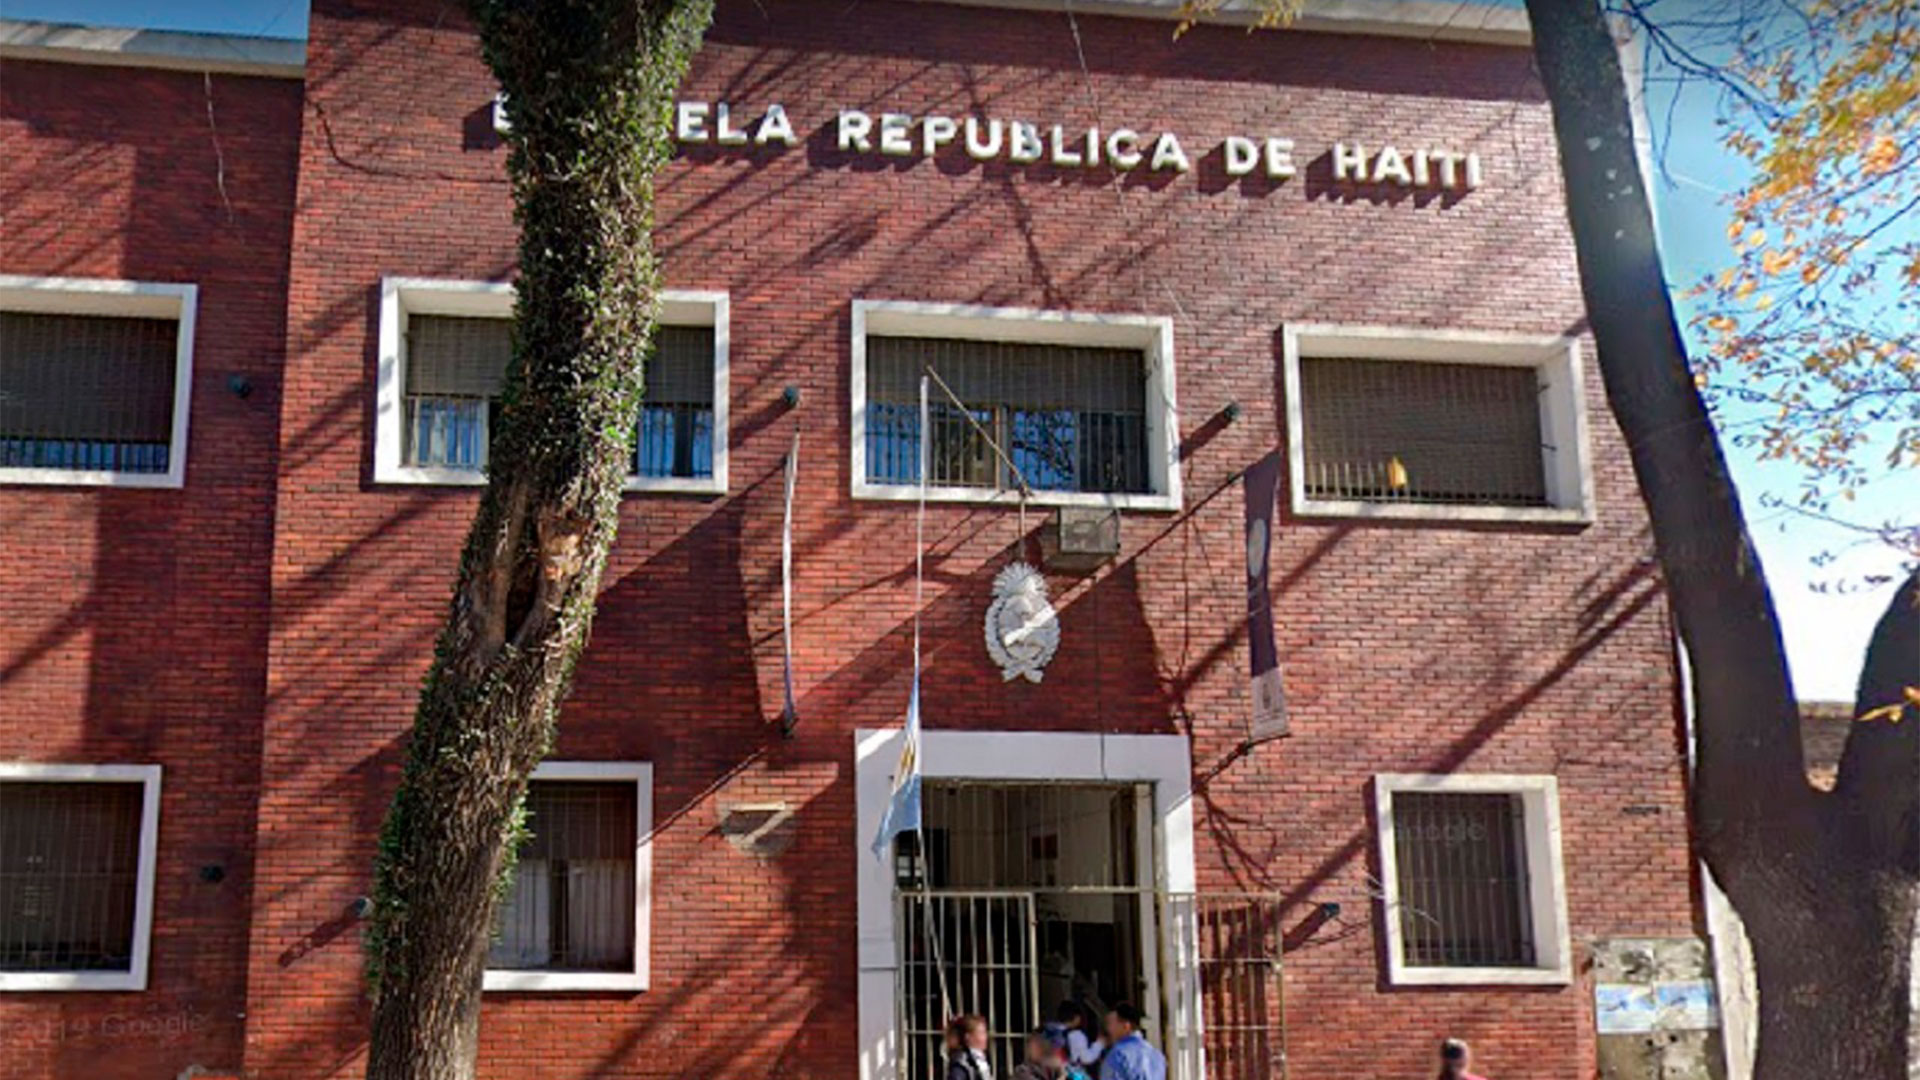 La escuela N°11 "Republica de Haíti" en el barrio de Barracas, donde la niña de 11 años iba a clases 